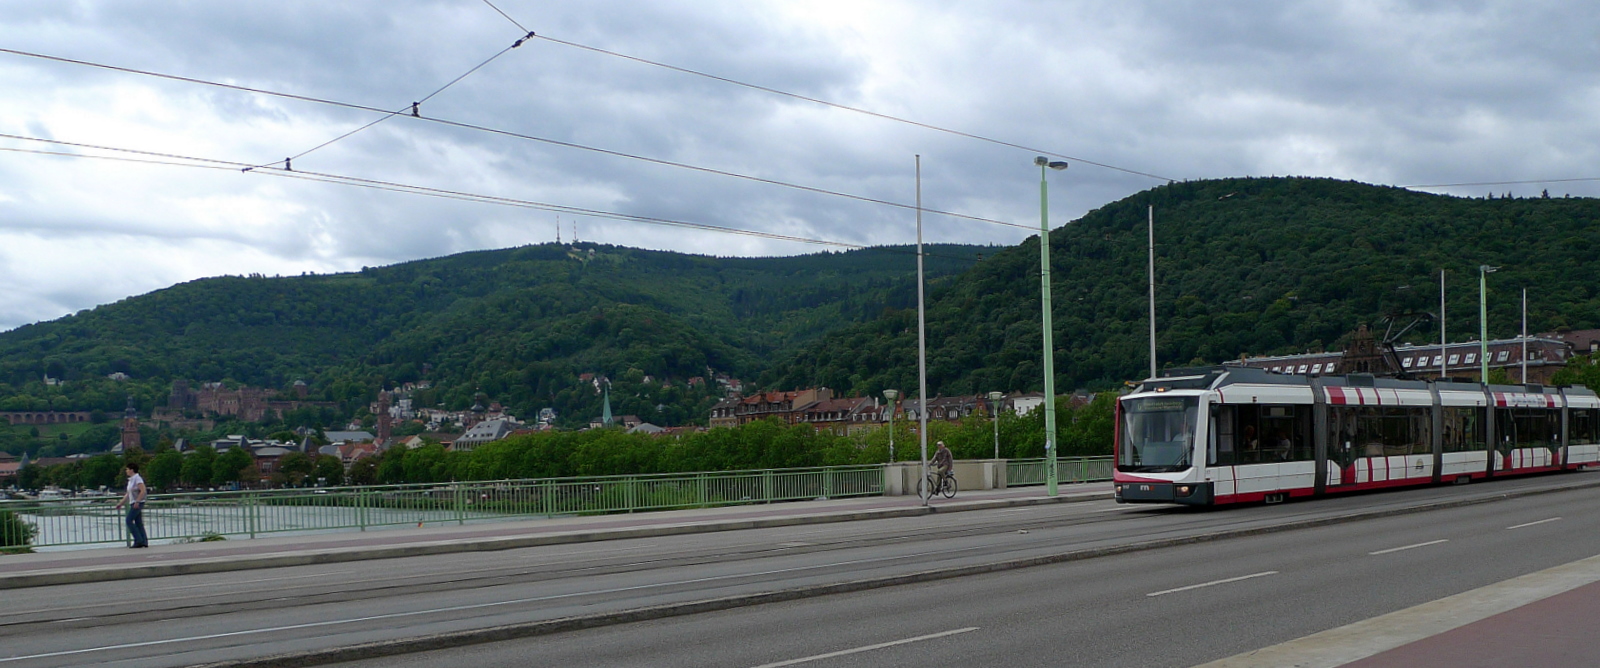 Adtrans auf der Th.Heuss Brücke in Heidelberg